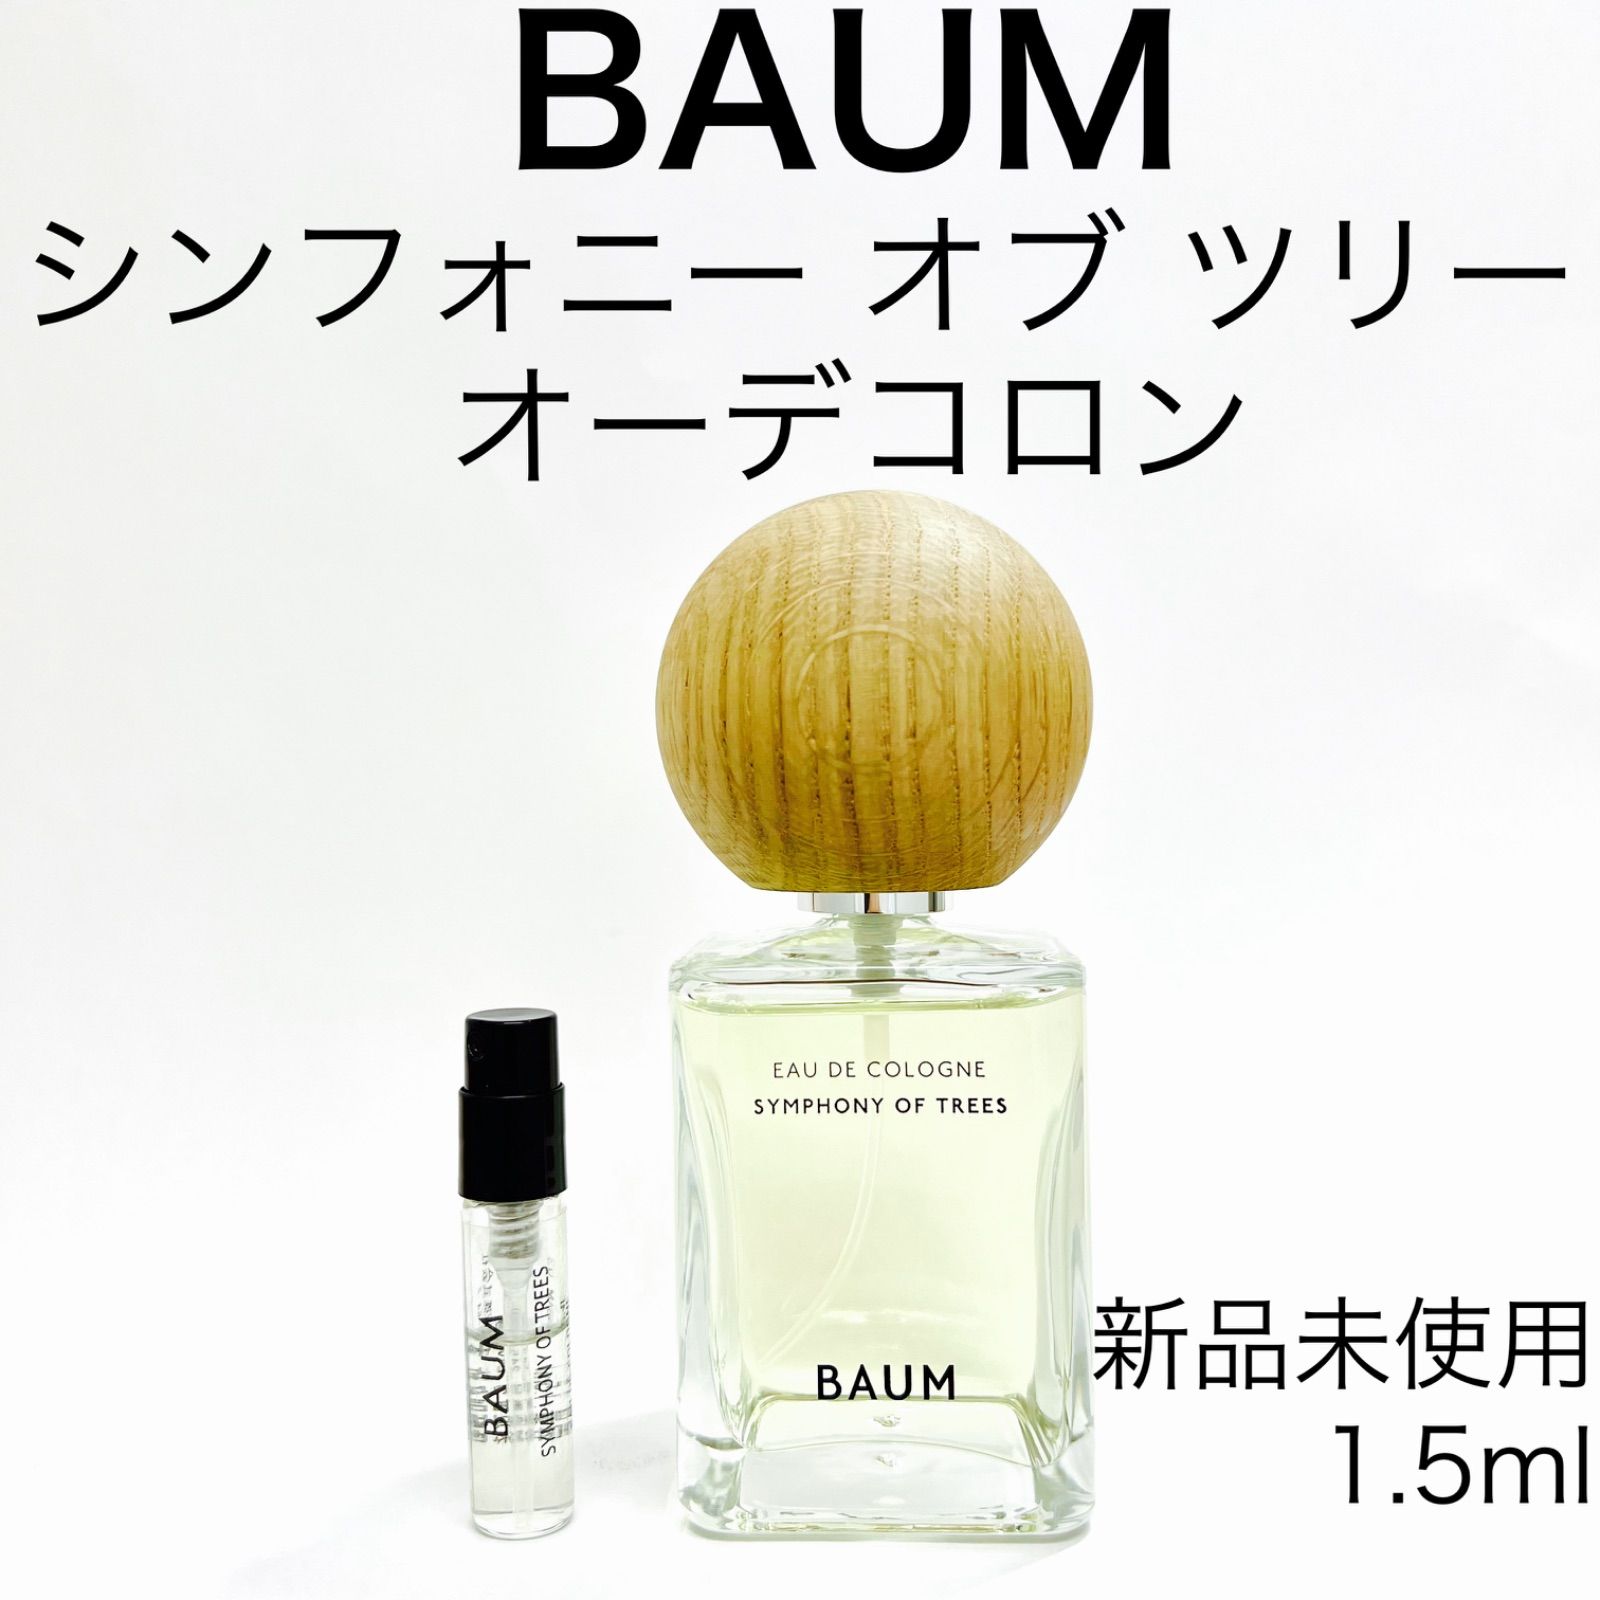 BAUM オーデコロン3 シンフォニーオブツリー 60ml - 香水(ユニセックス)